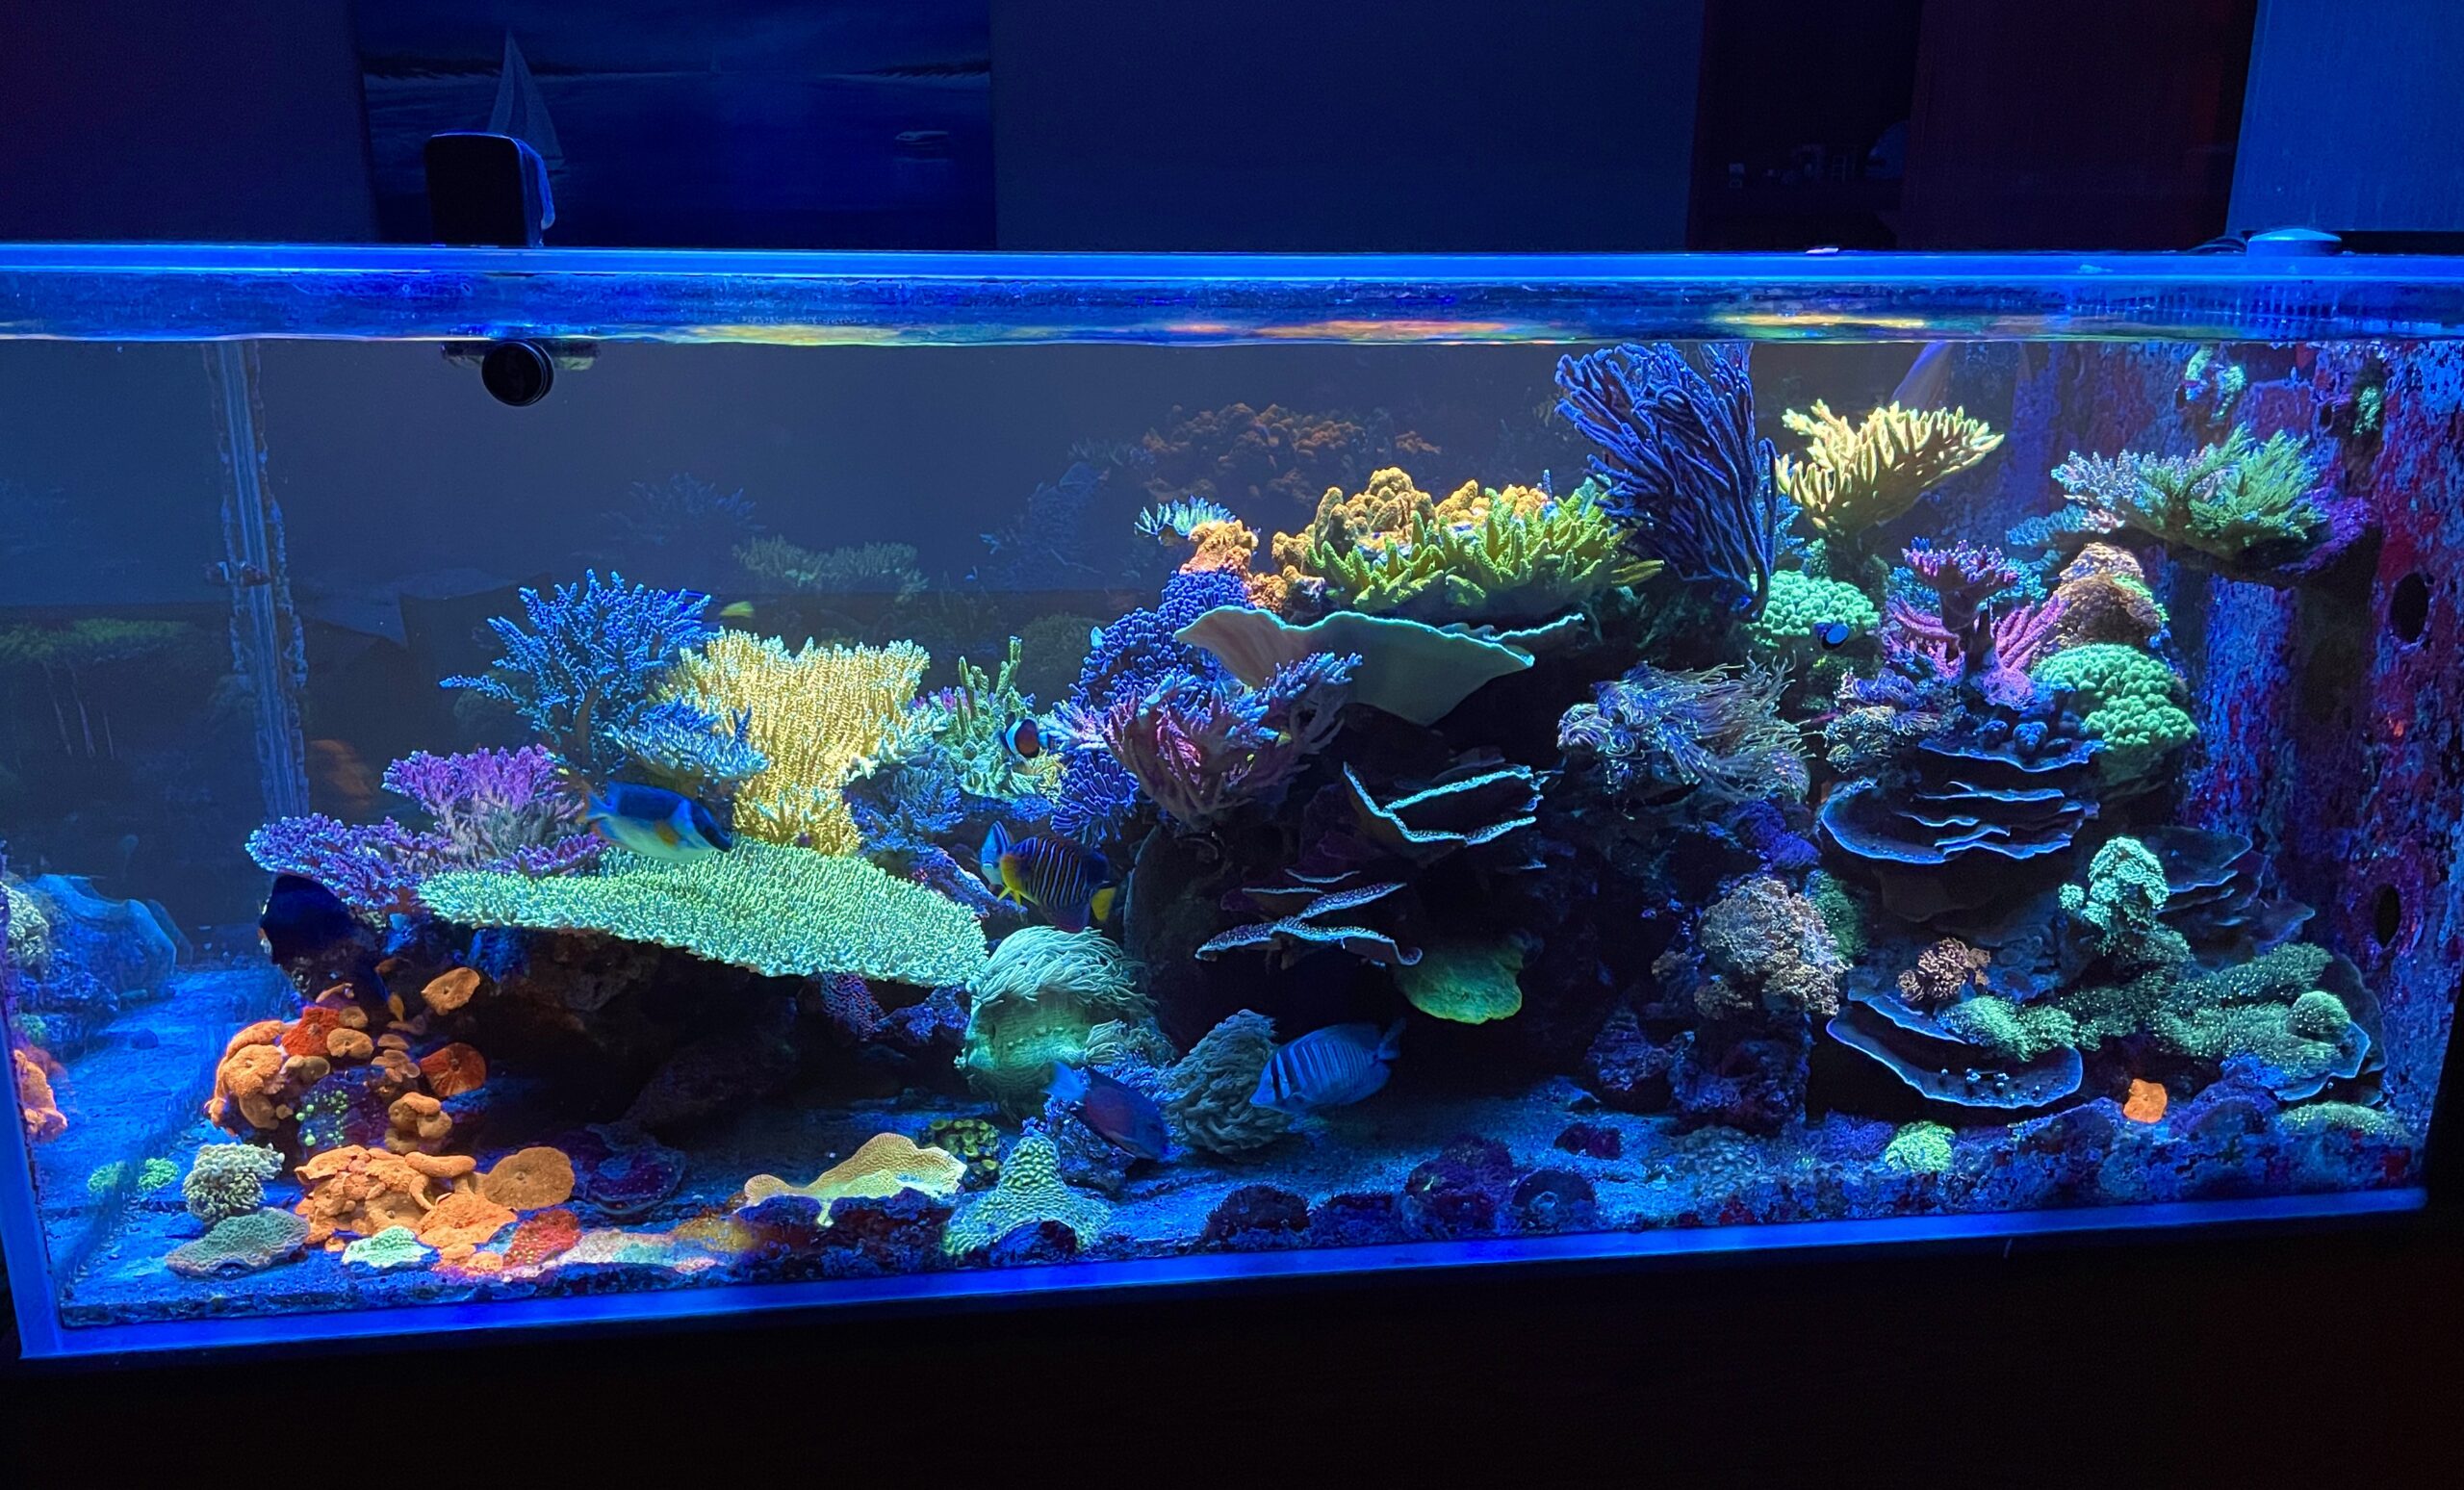 Φως led για ενυδρείο με κοραλλιογενή ύφαλο φθορισμού